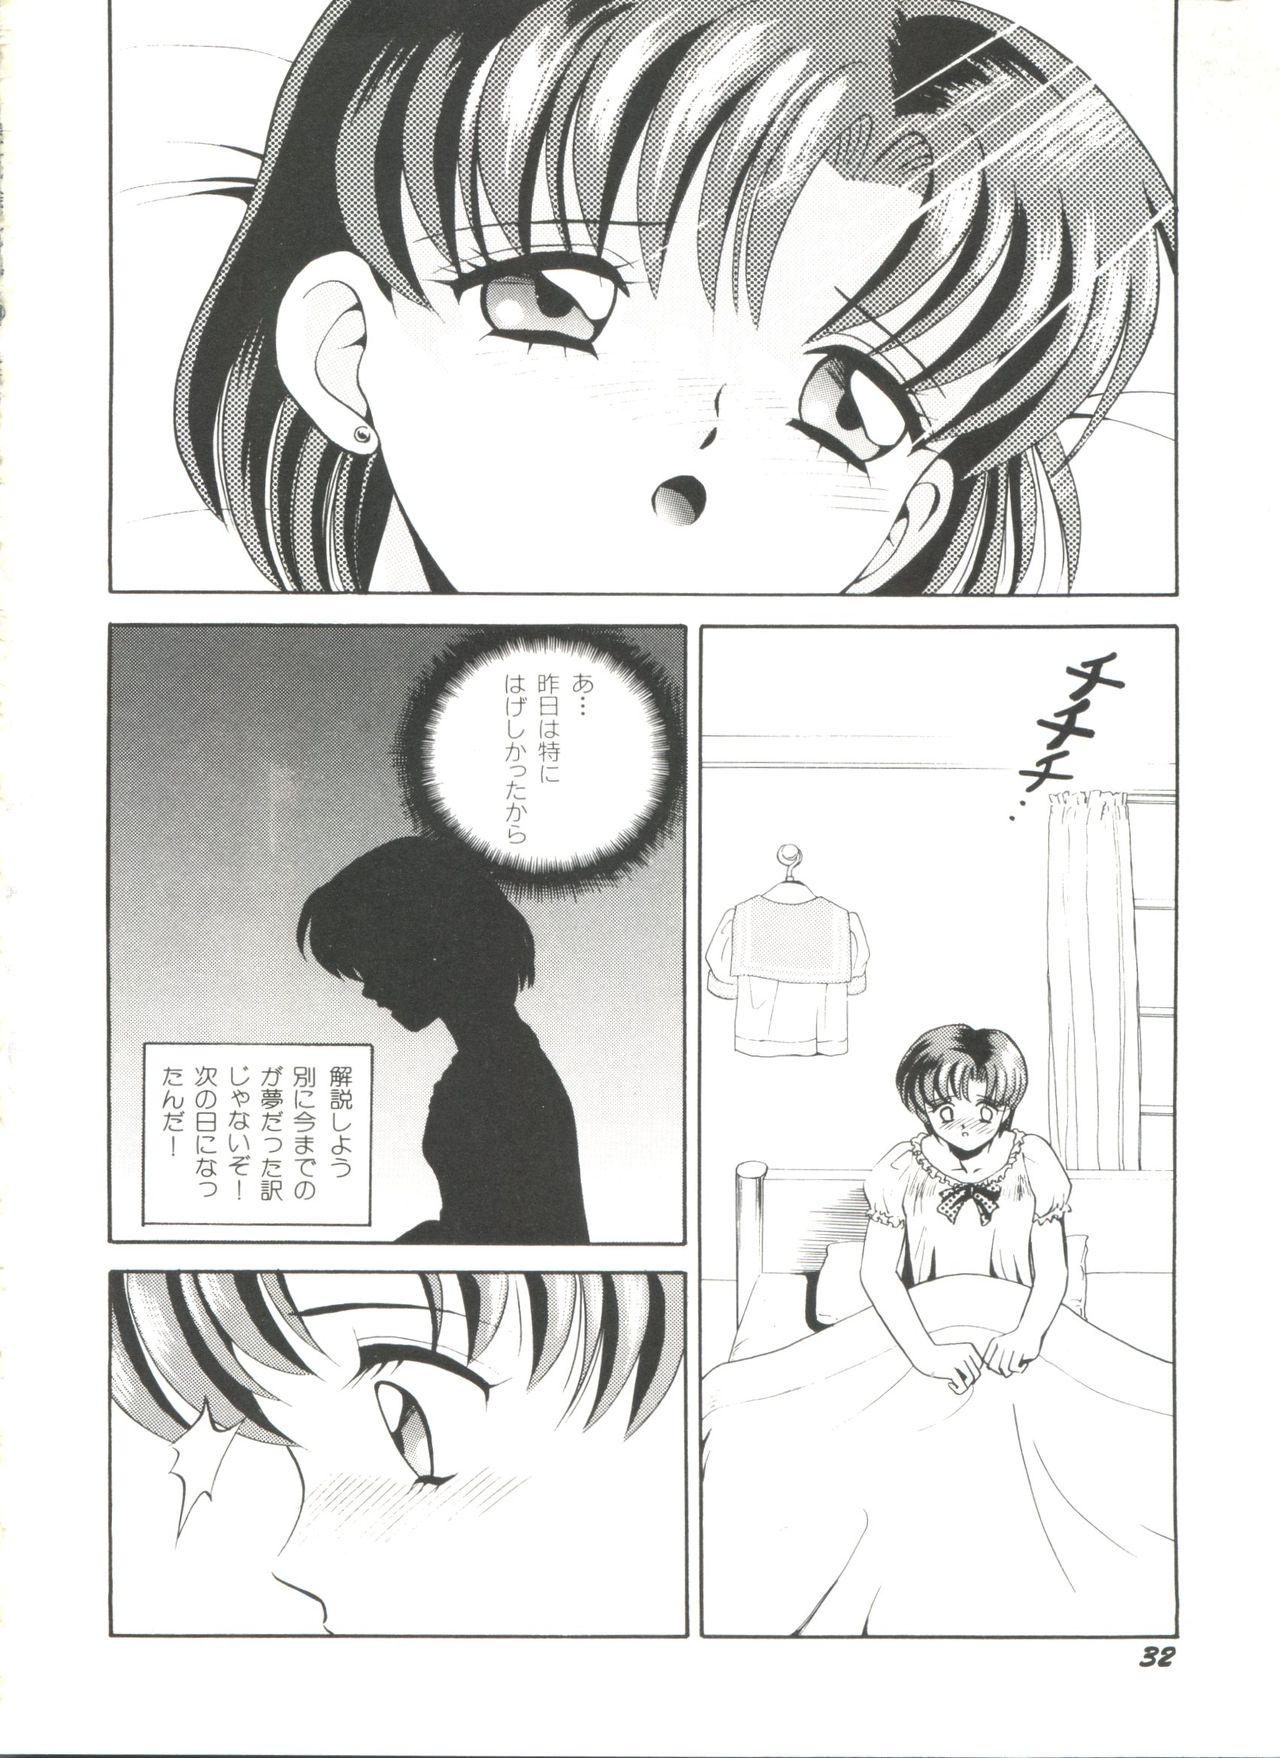 Bishoujo Doujinshi Anthology 18 - Moon Paradise 11 Tsuki no Rakuen 33